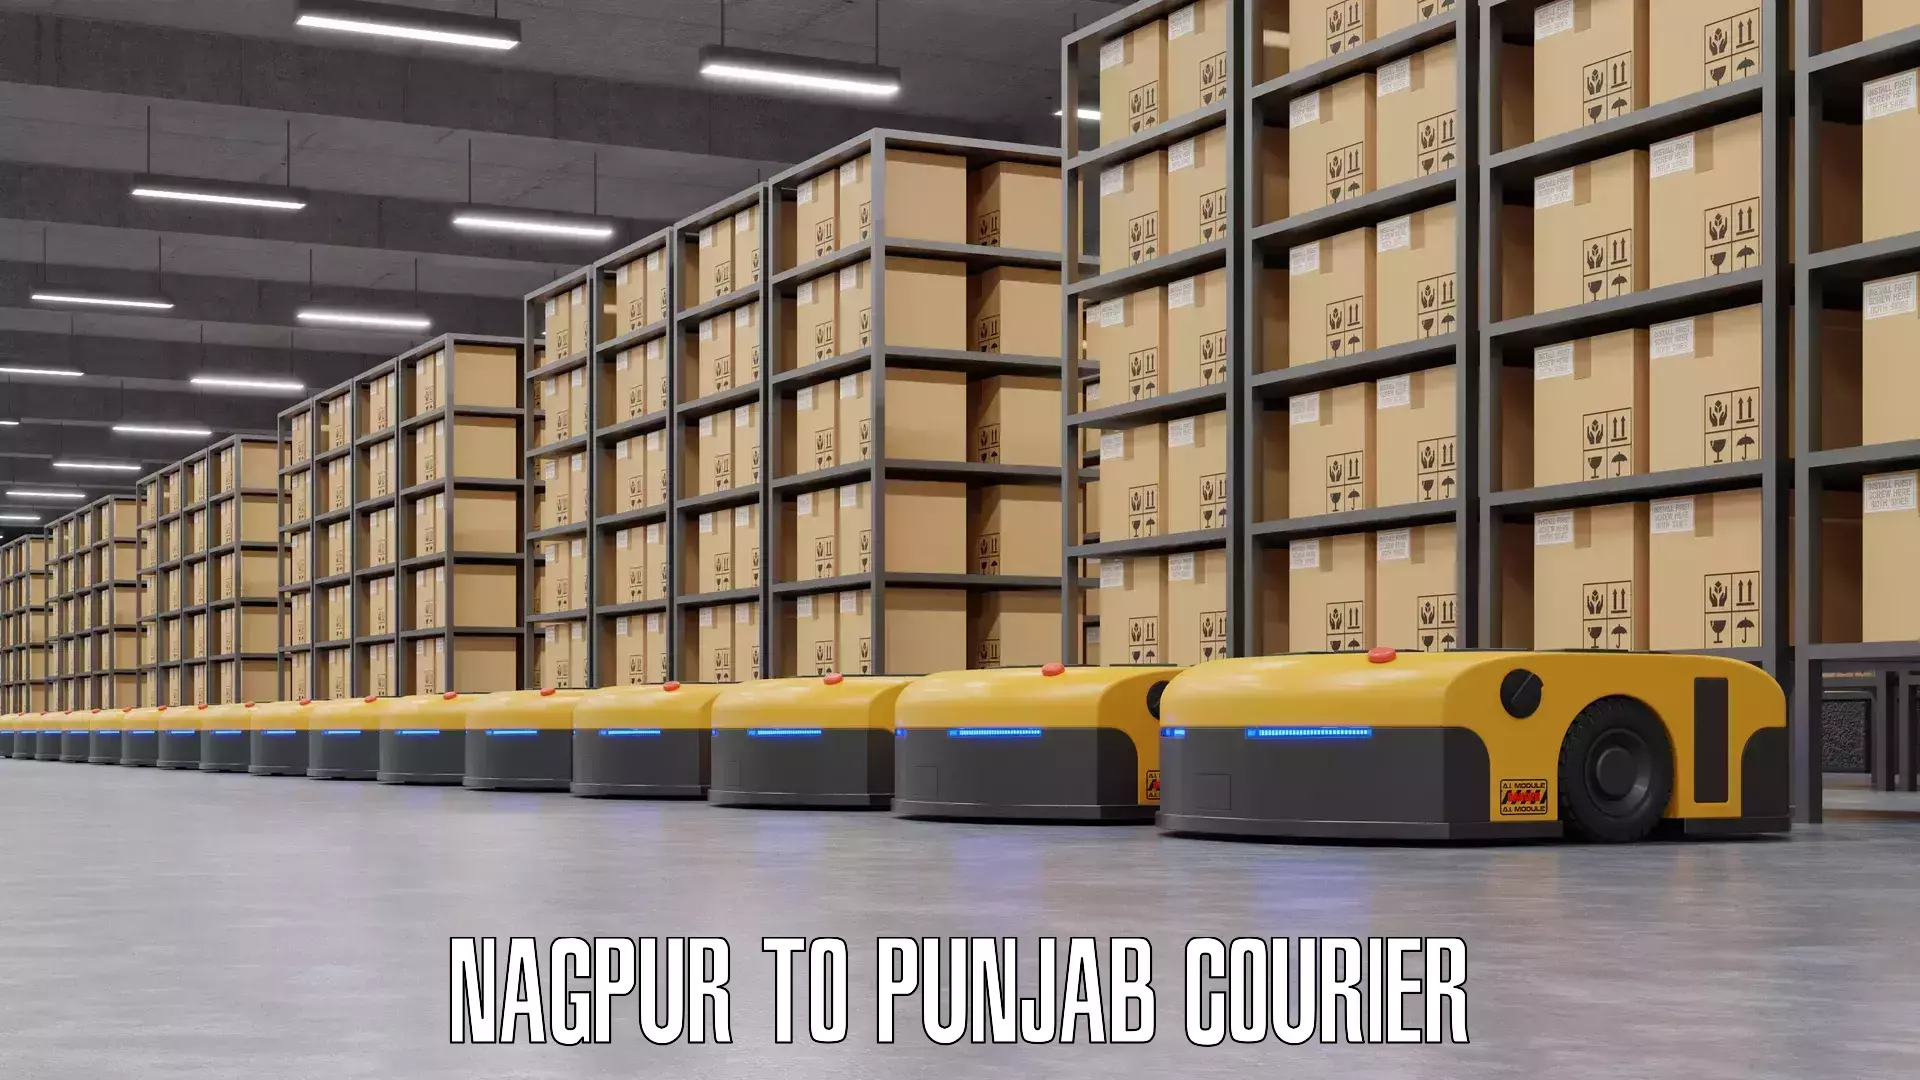 Baggage transport network Nagpur to Punjab